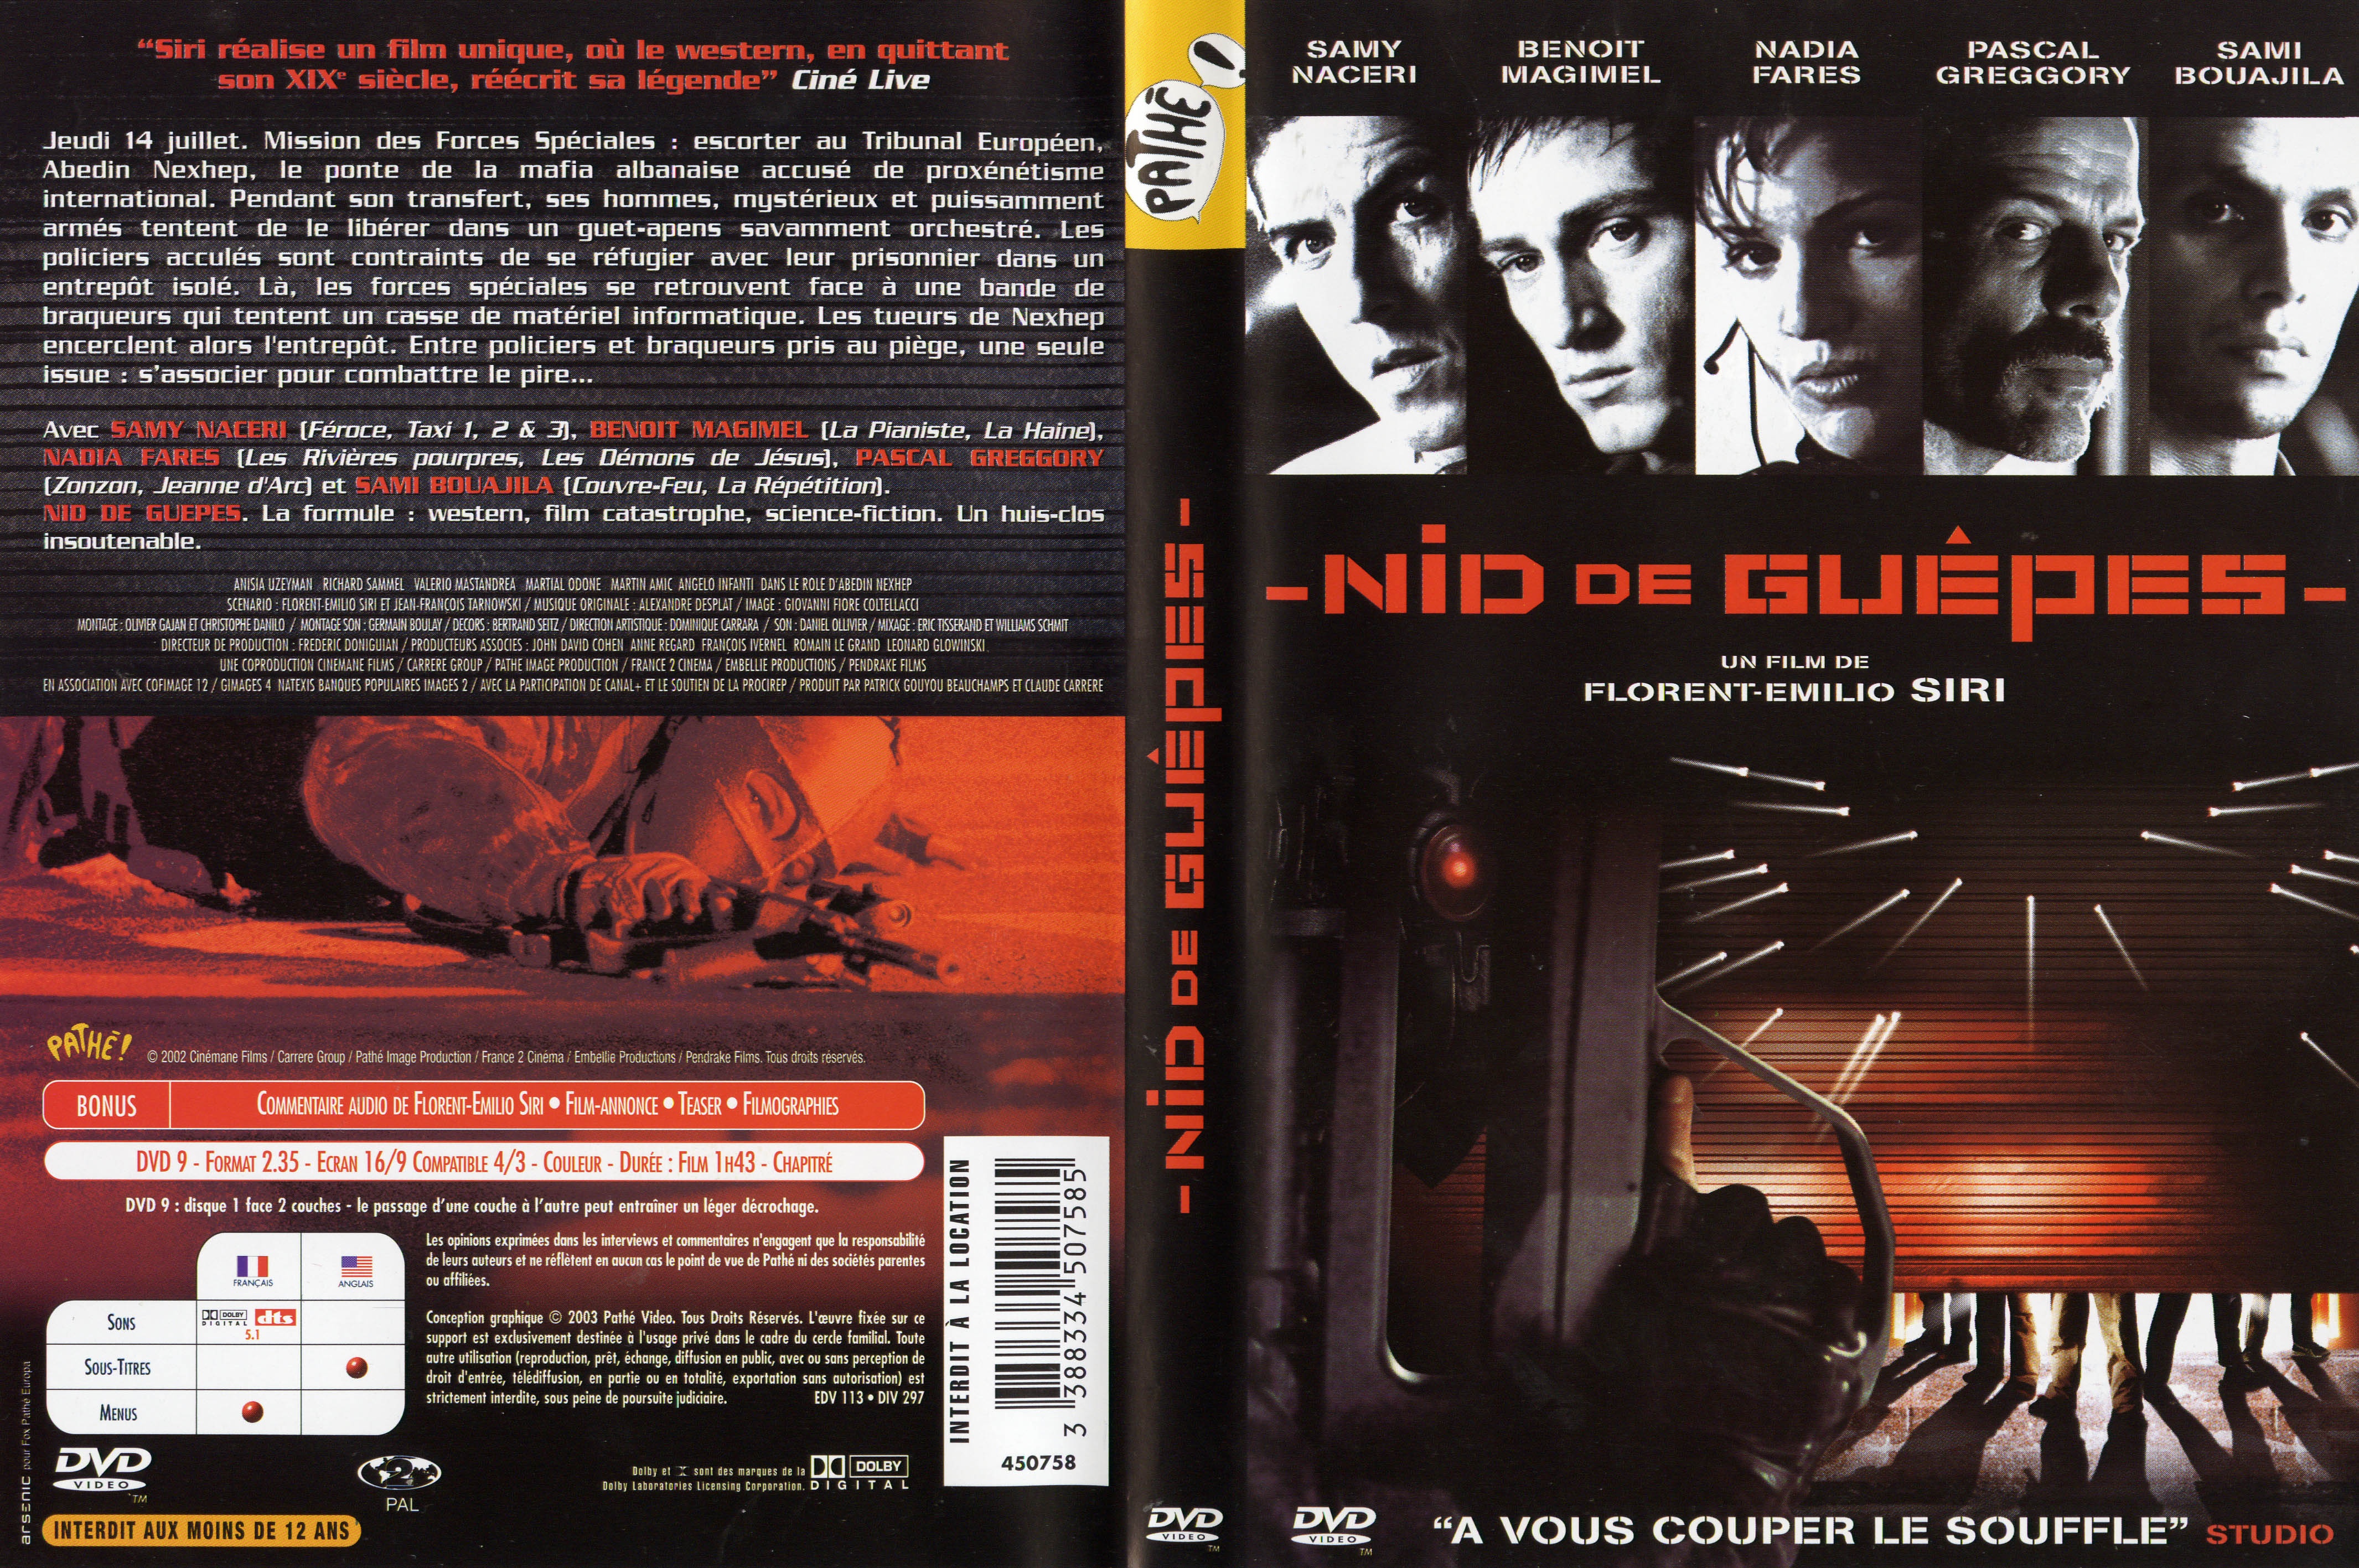 Jaquette DVD Nid de guepes v2